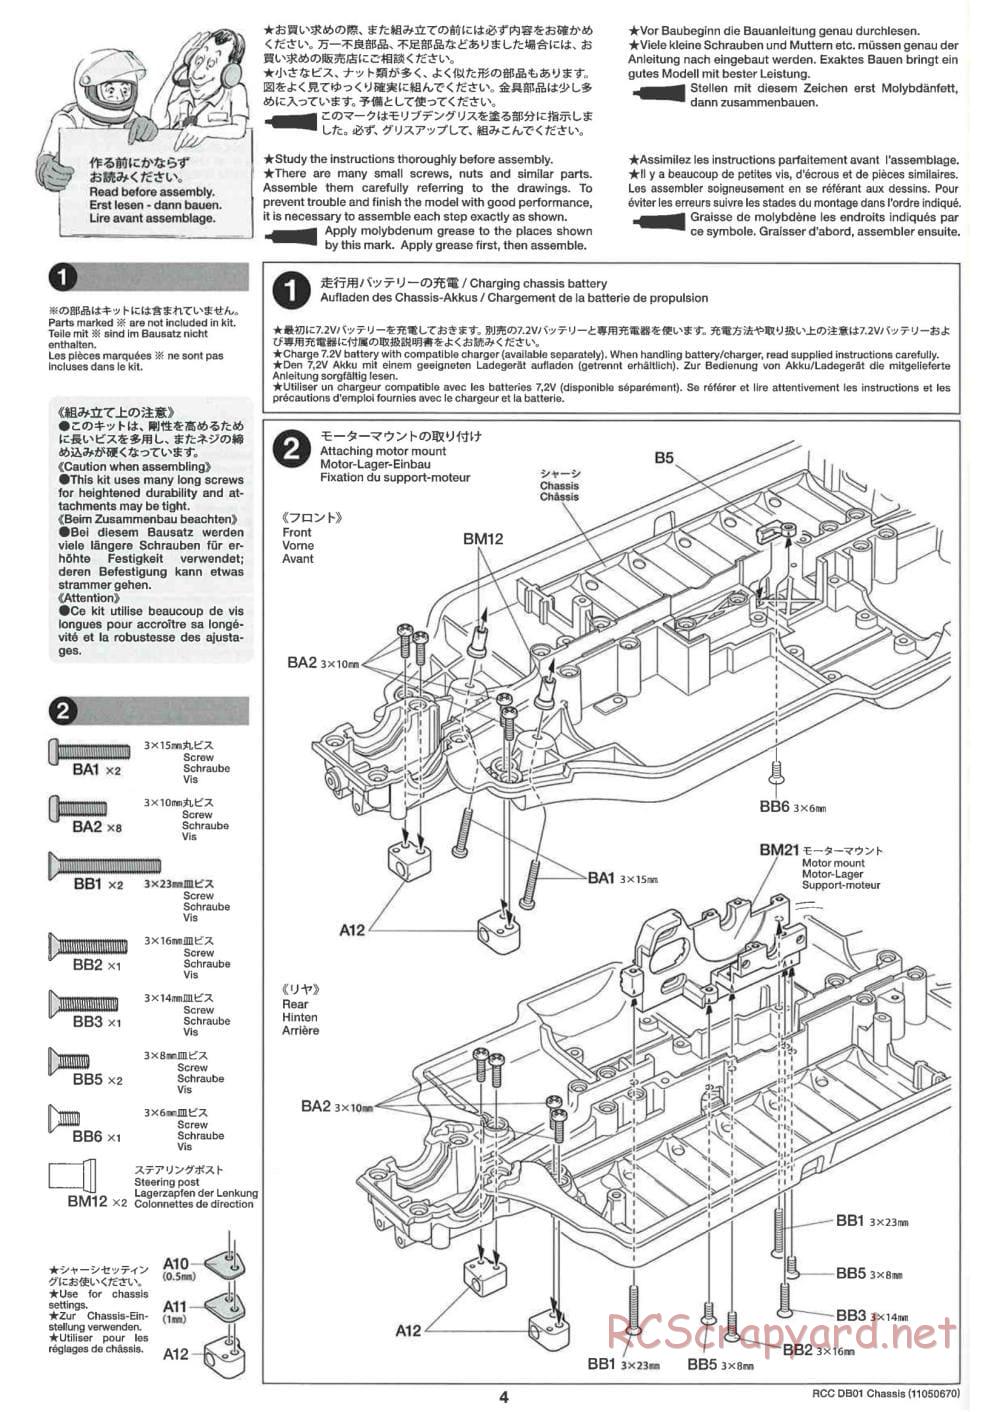 Tamiya - DB-01 Chassis - Manual - Page 4